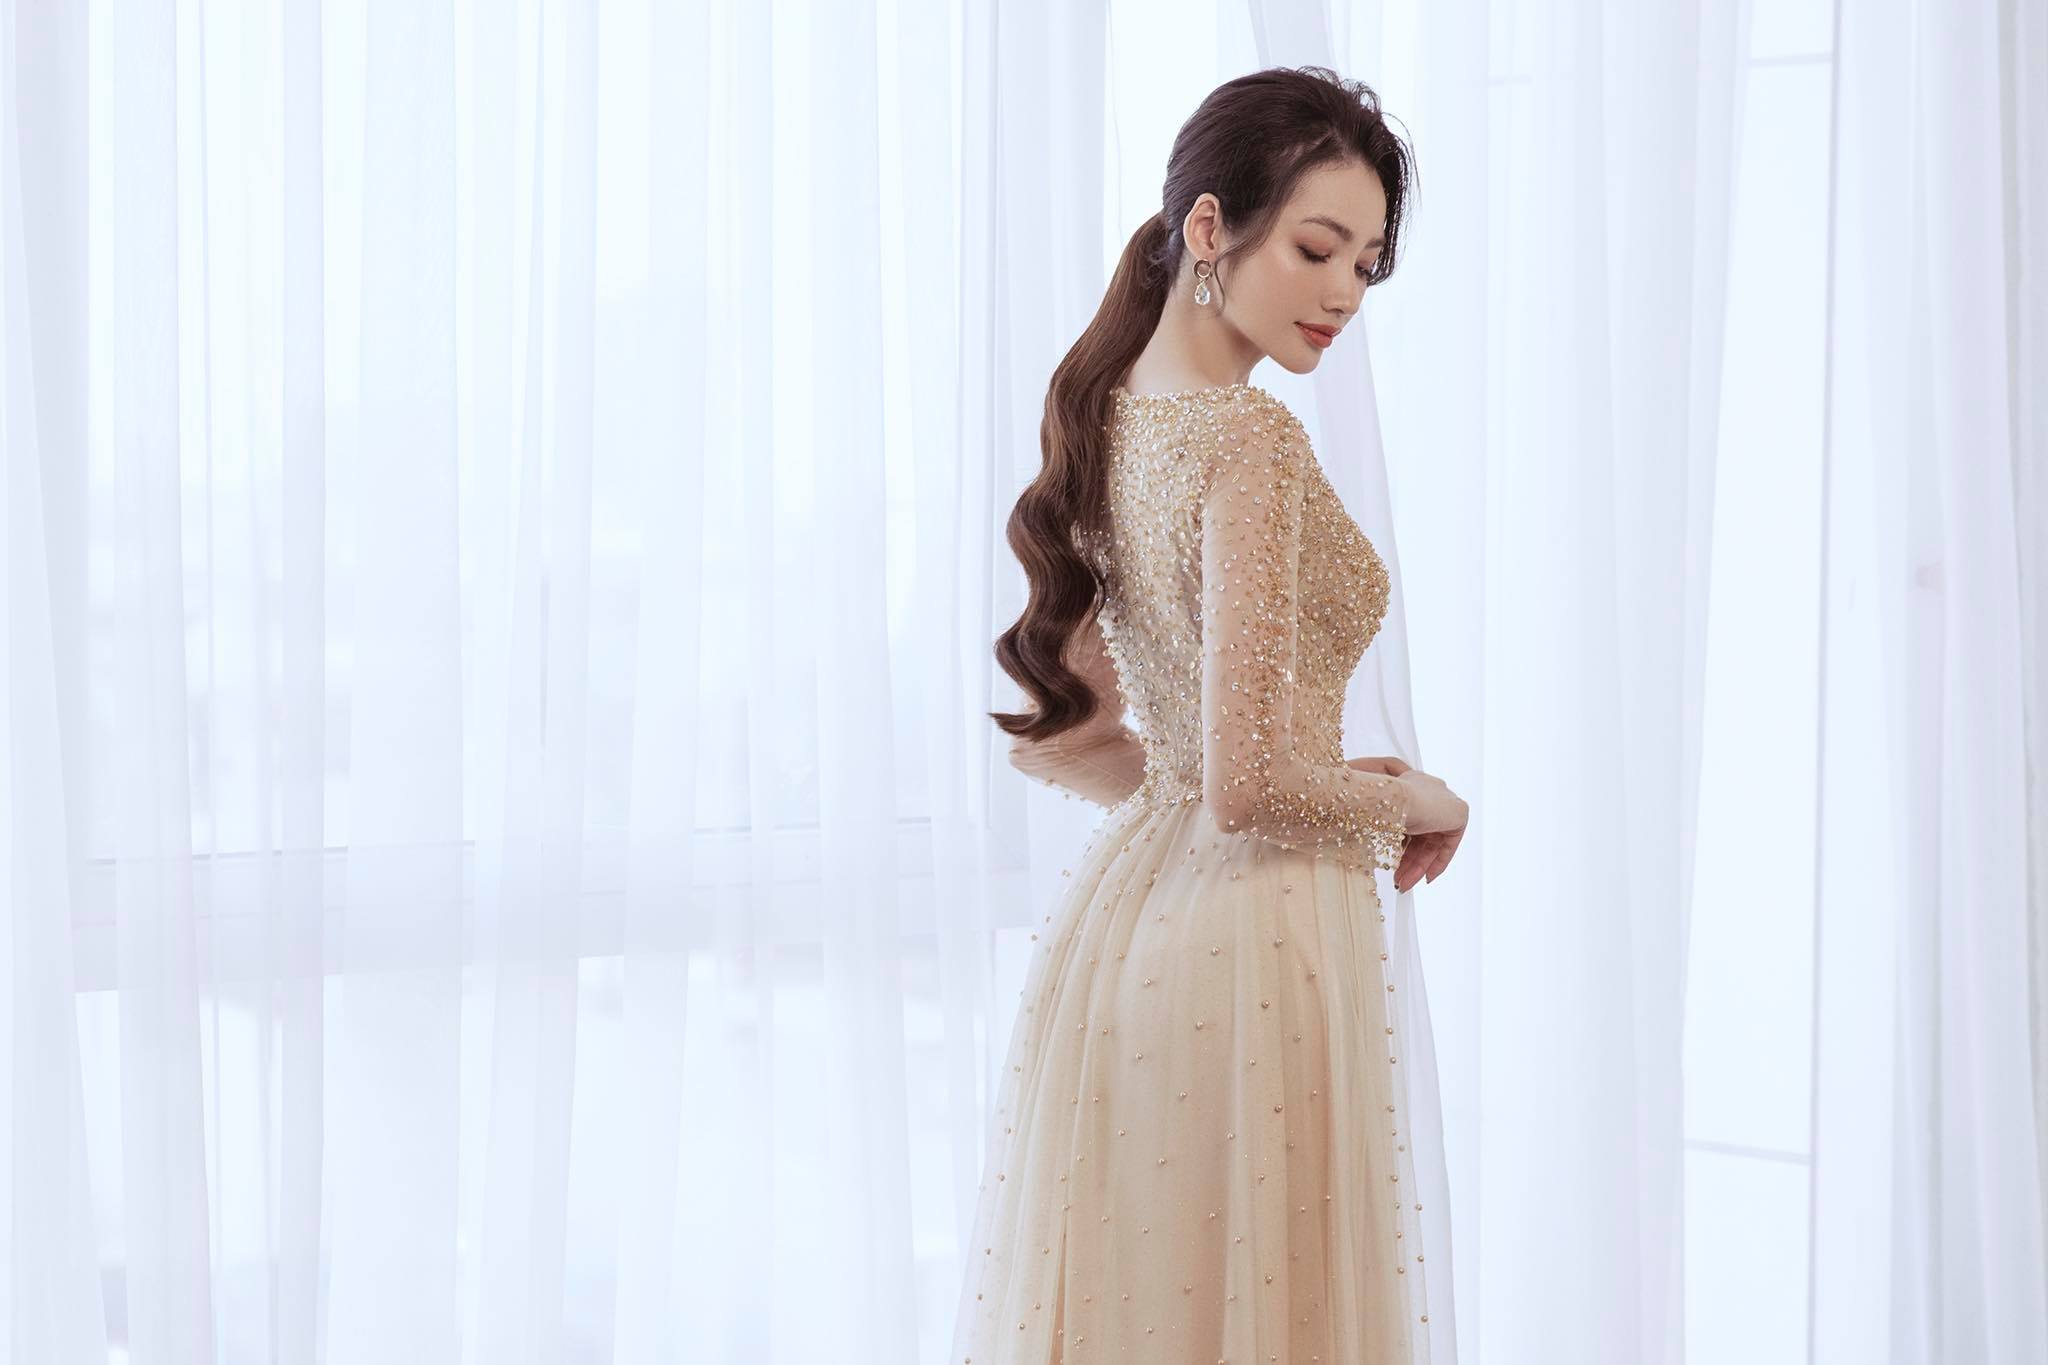 Người mẫu Trương Tri Trúc Diễm diện các mẫu áo dài đính kết, xuyên thấu dành cho cô dâu.